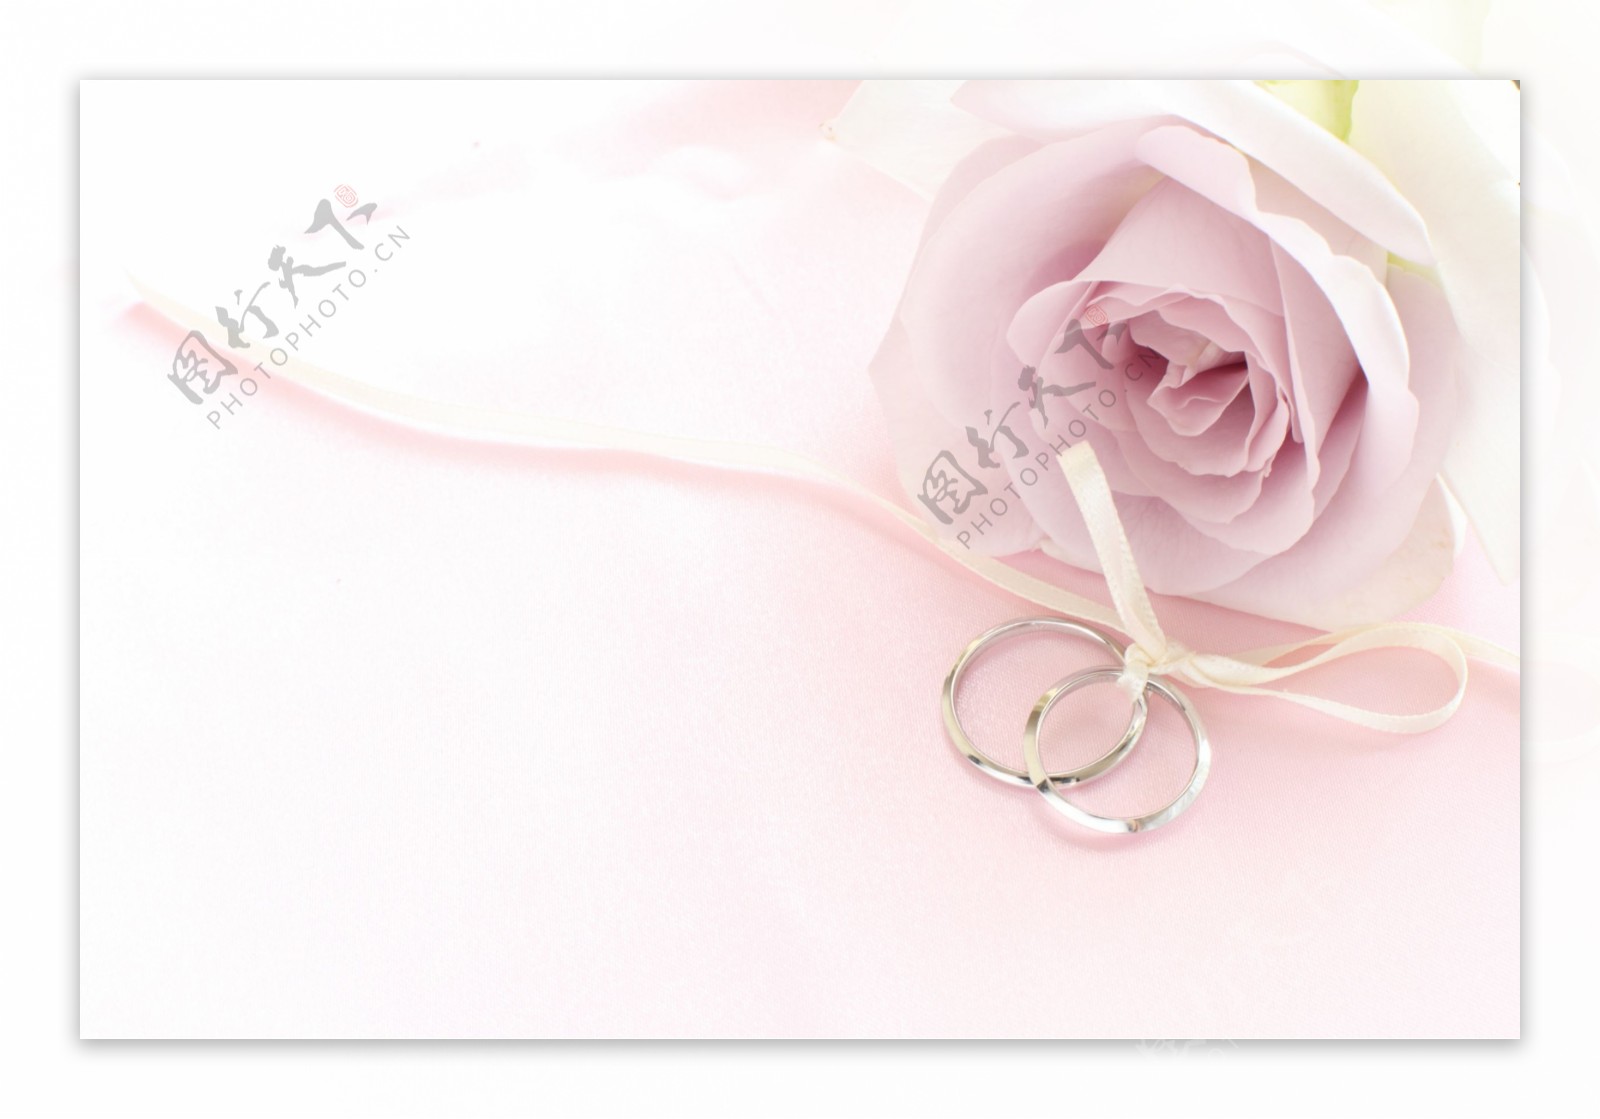 玫瑰花与结婚戒指图片